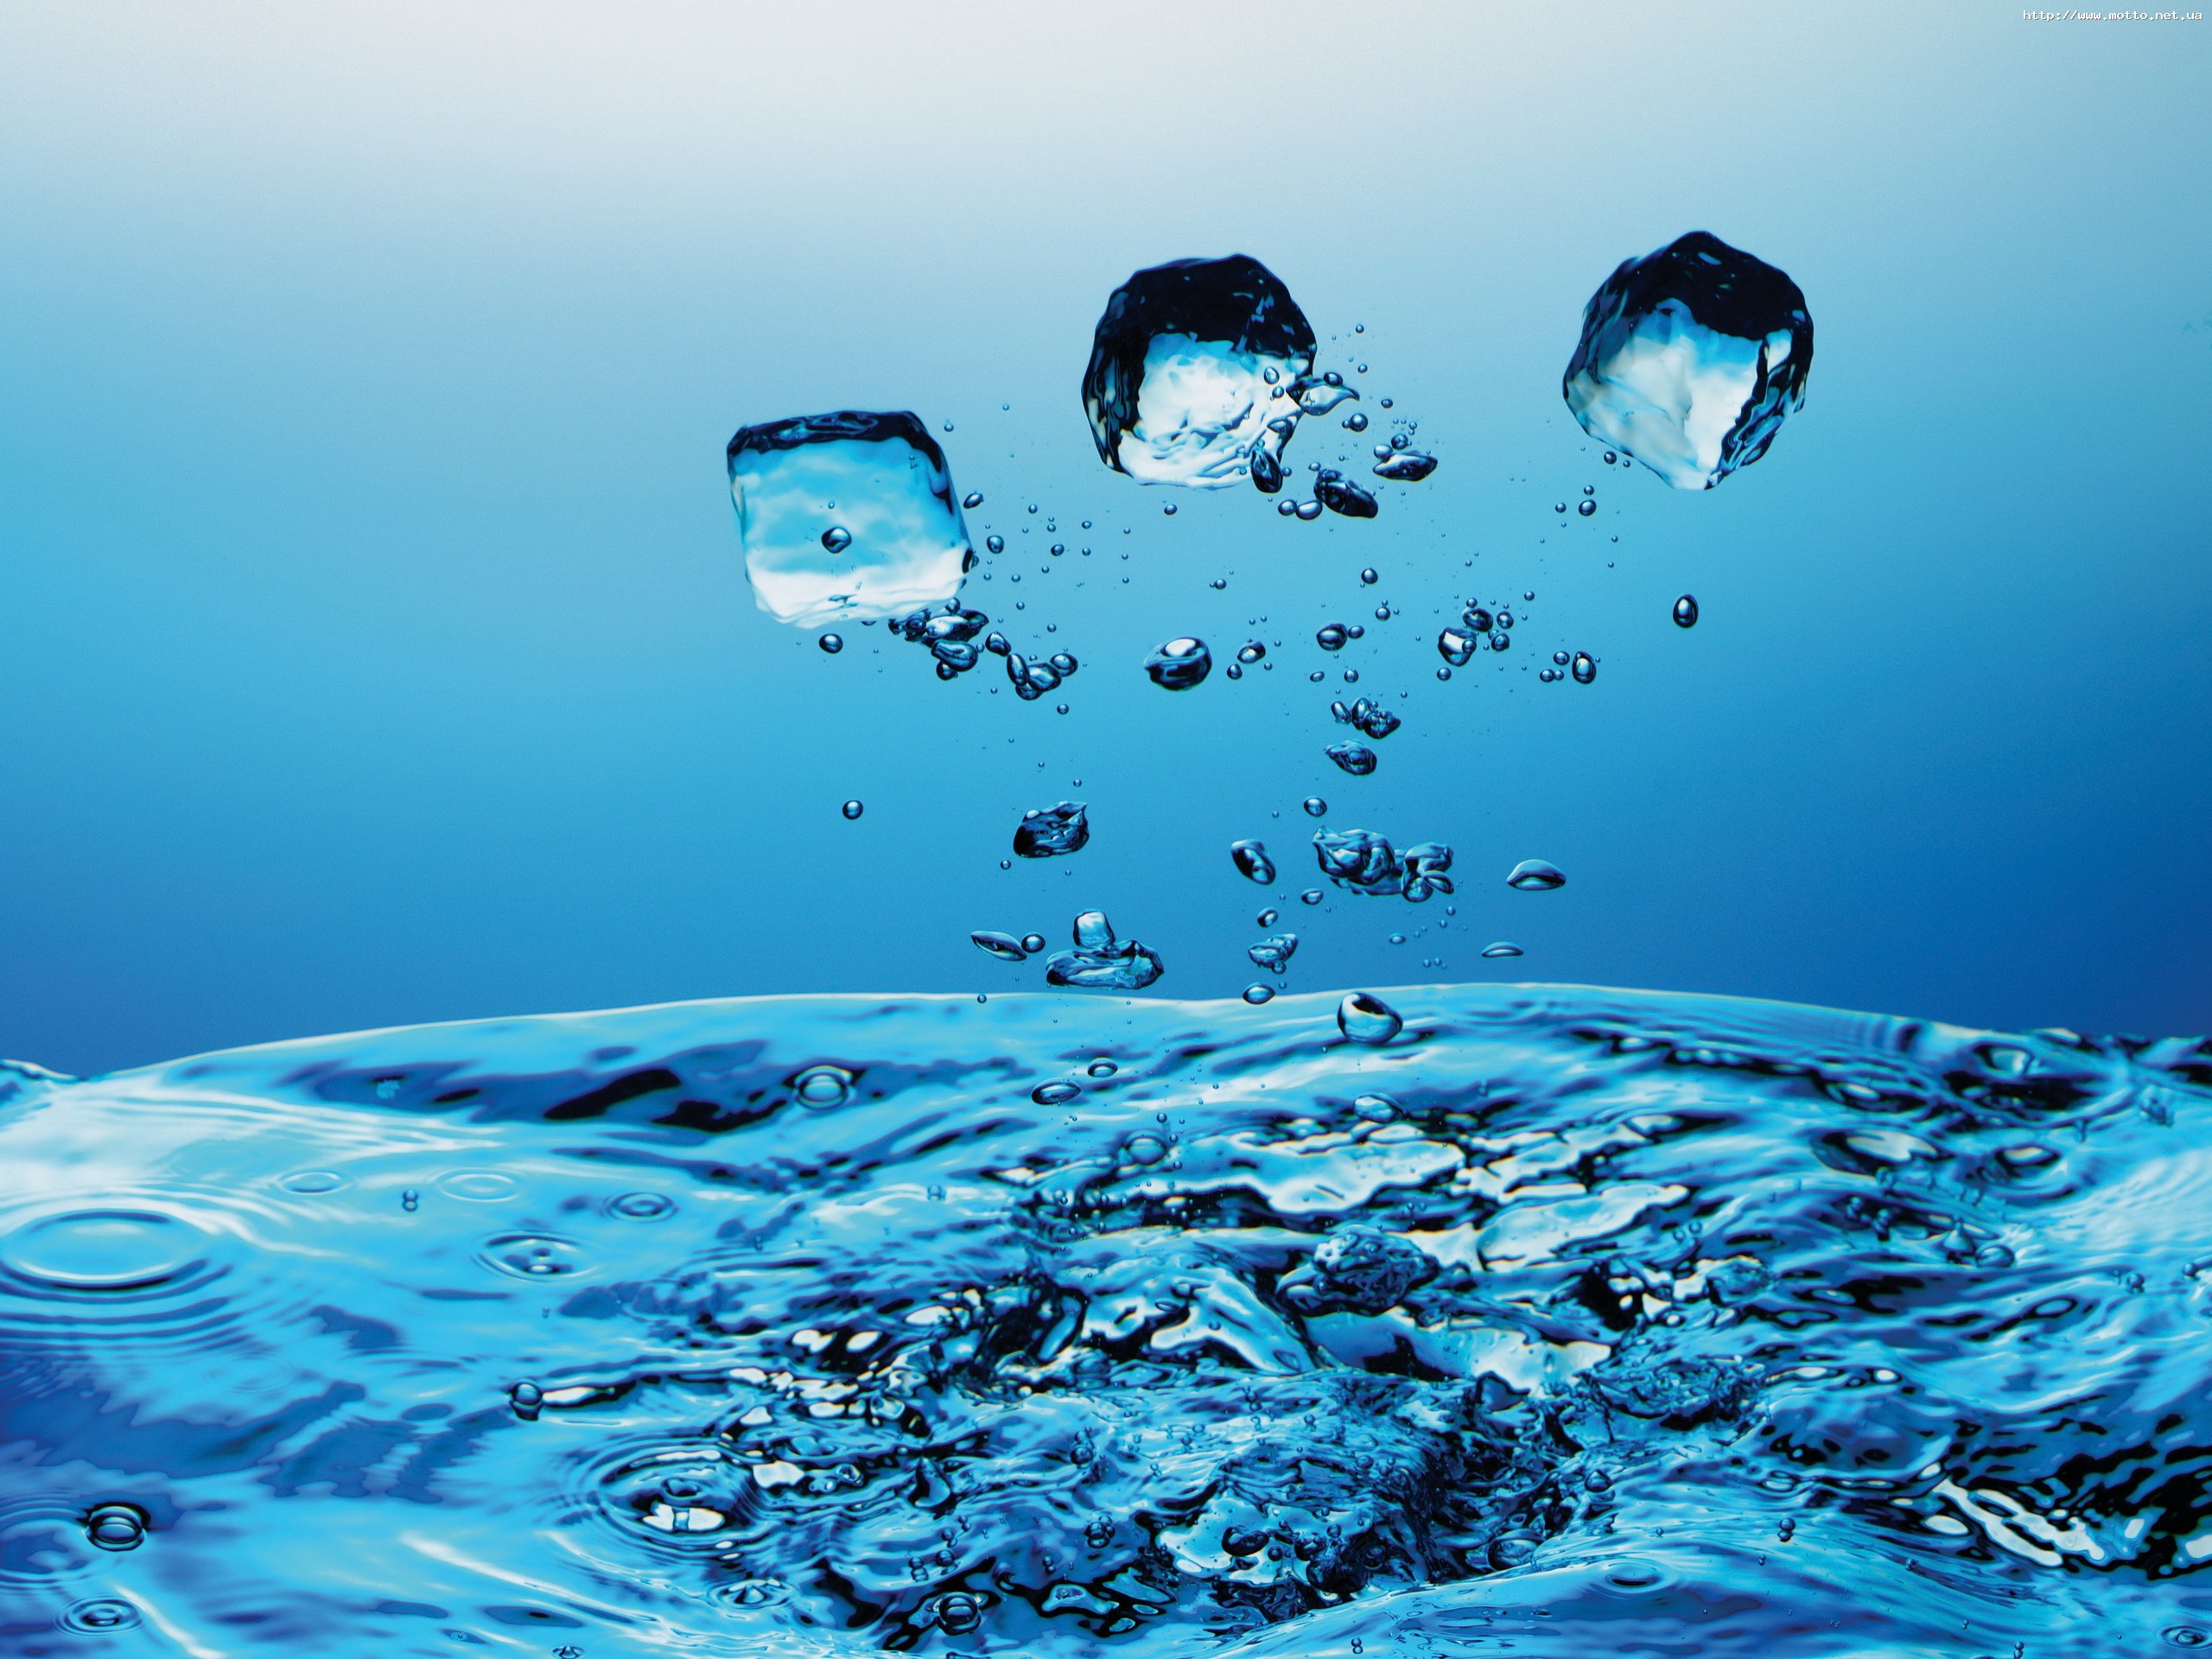 Water power 1. Вода. Вода источник жизни. Чистая вода. Изображение воды.